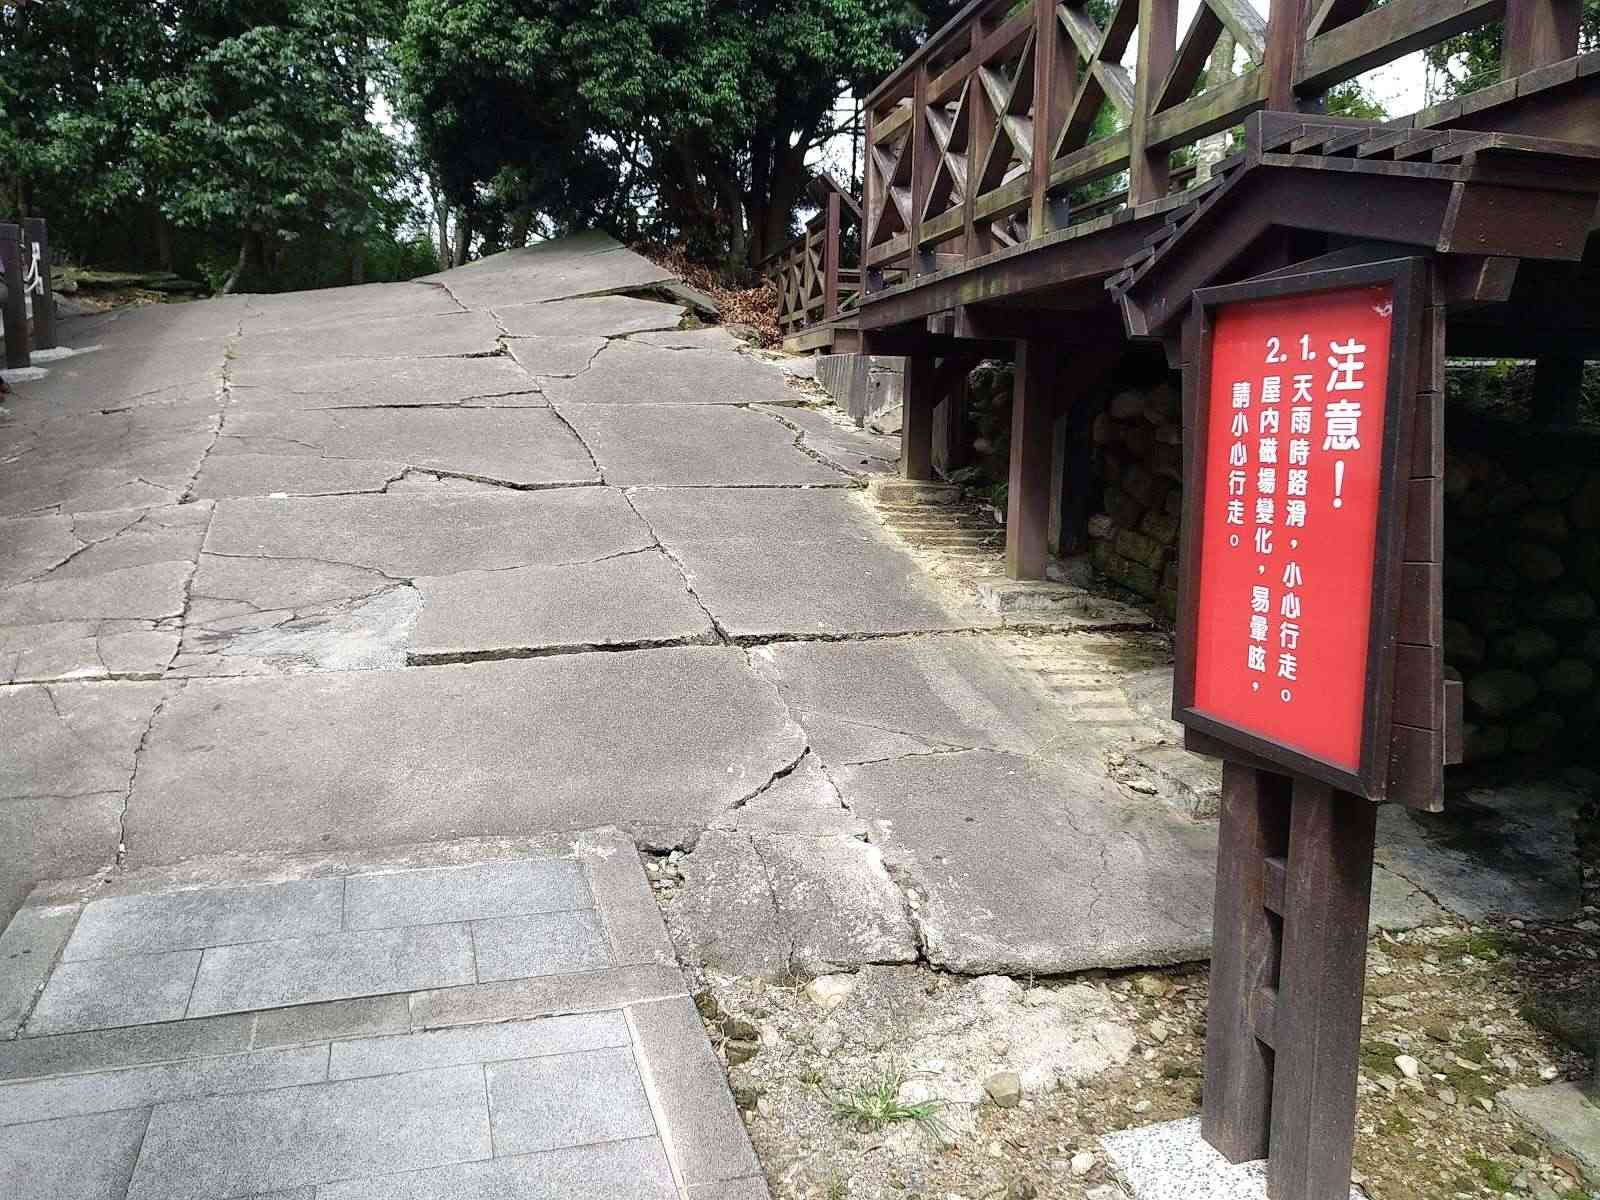 九份二山地震紀念園區/ 攝影者: hugo tsai

(由第三方資訊提供)